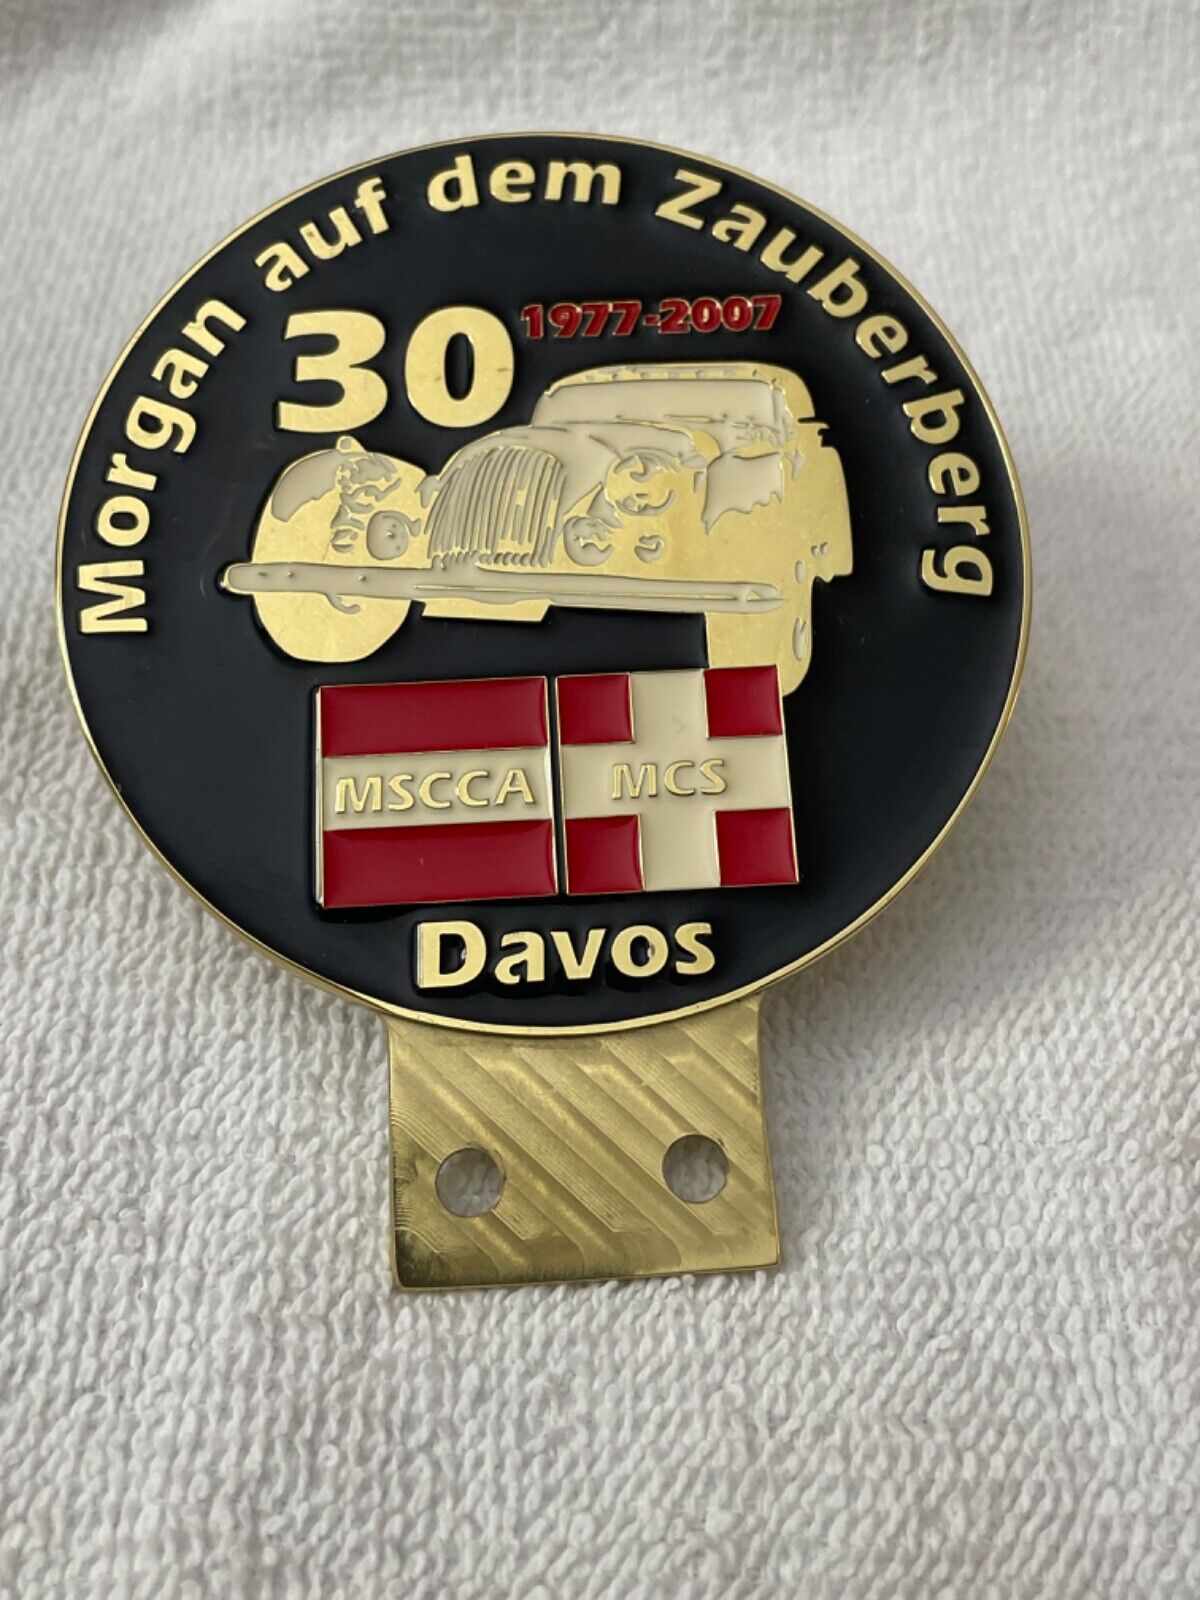 2007 Morgan Sports Car Club of Austria Badge